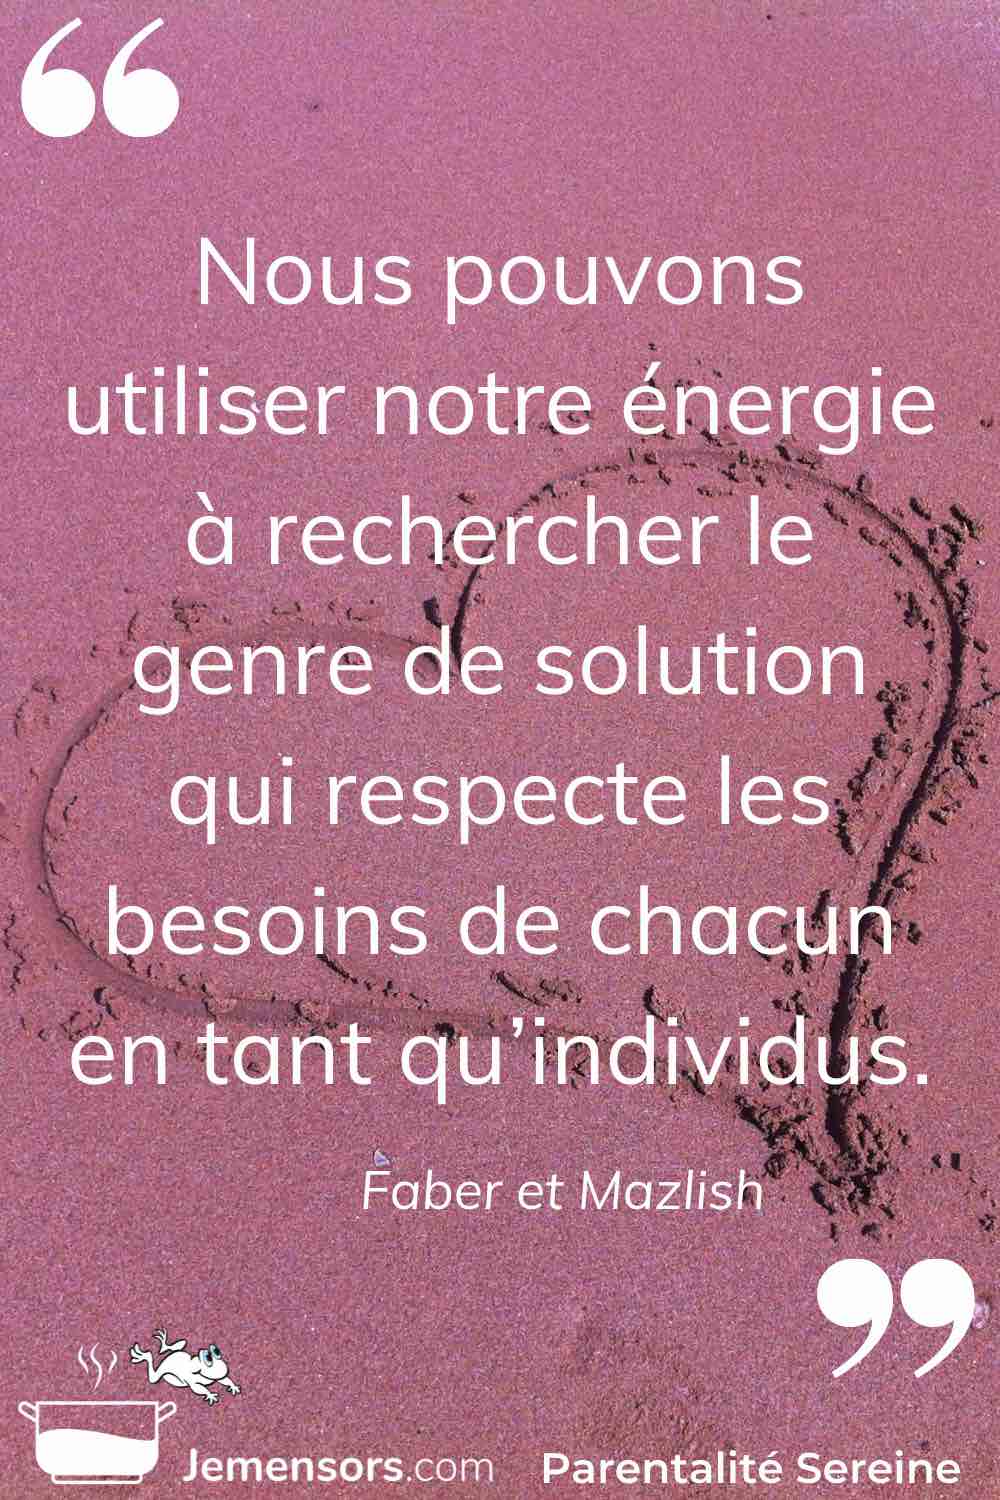 "Nous pouvons utiliser notre énergie à rechercher le genre de solution qui respecte les besoins de chacun en tant qu’individus." Faber et Mazlish